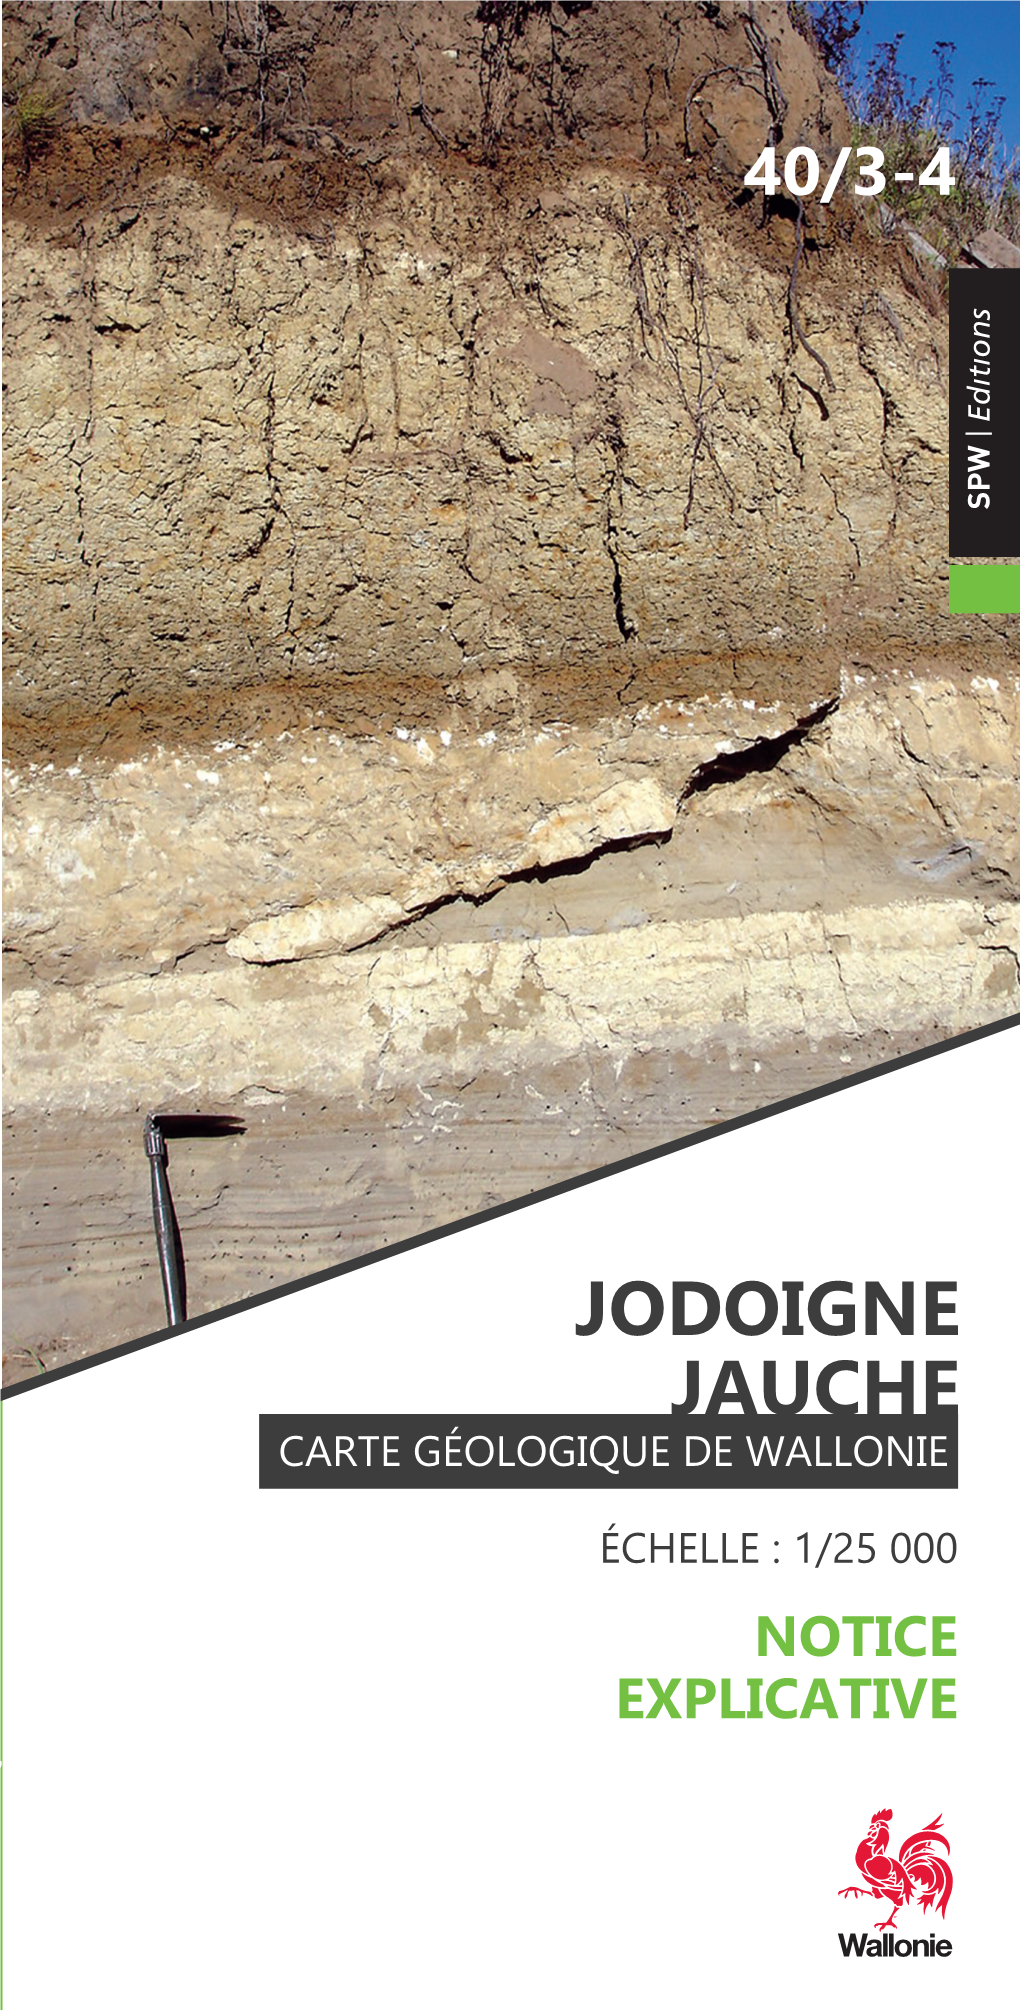 Jodoigne Jauche